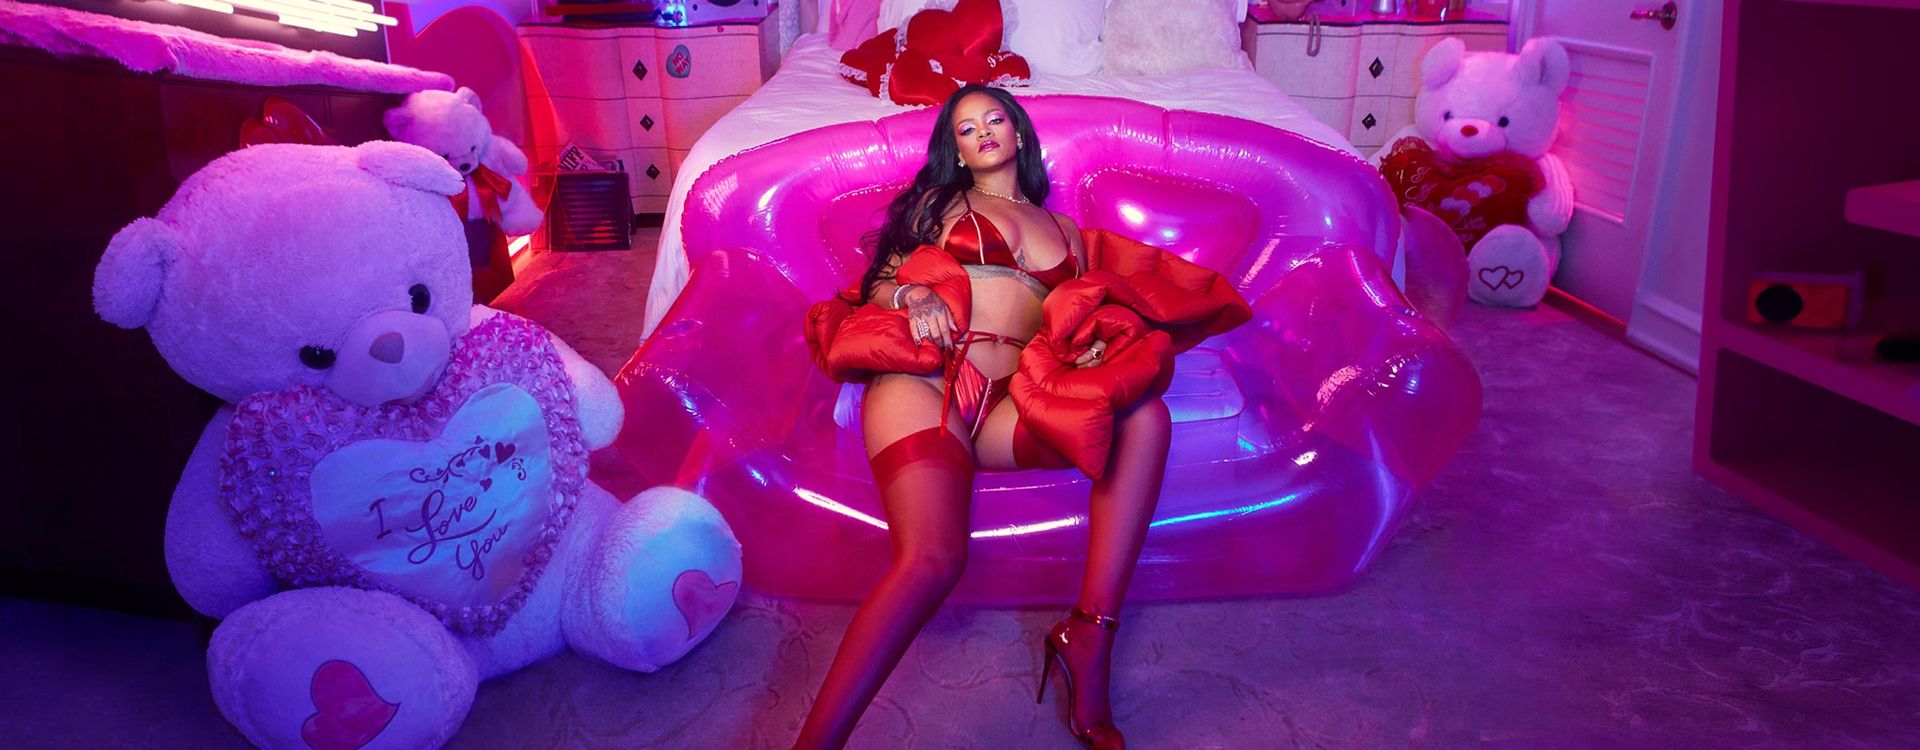 Rihanna Sexy 0002